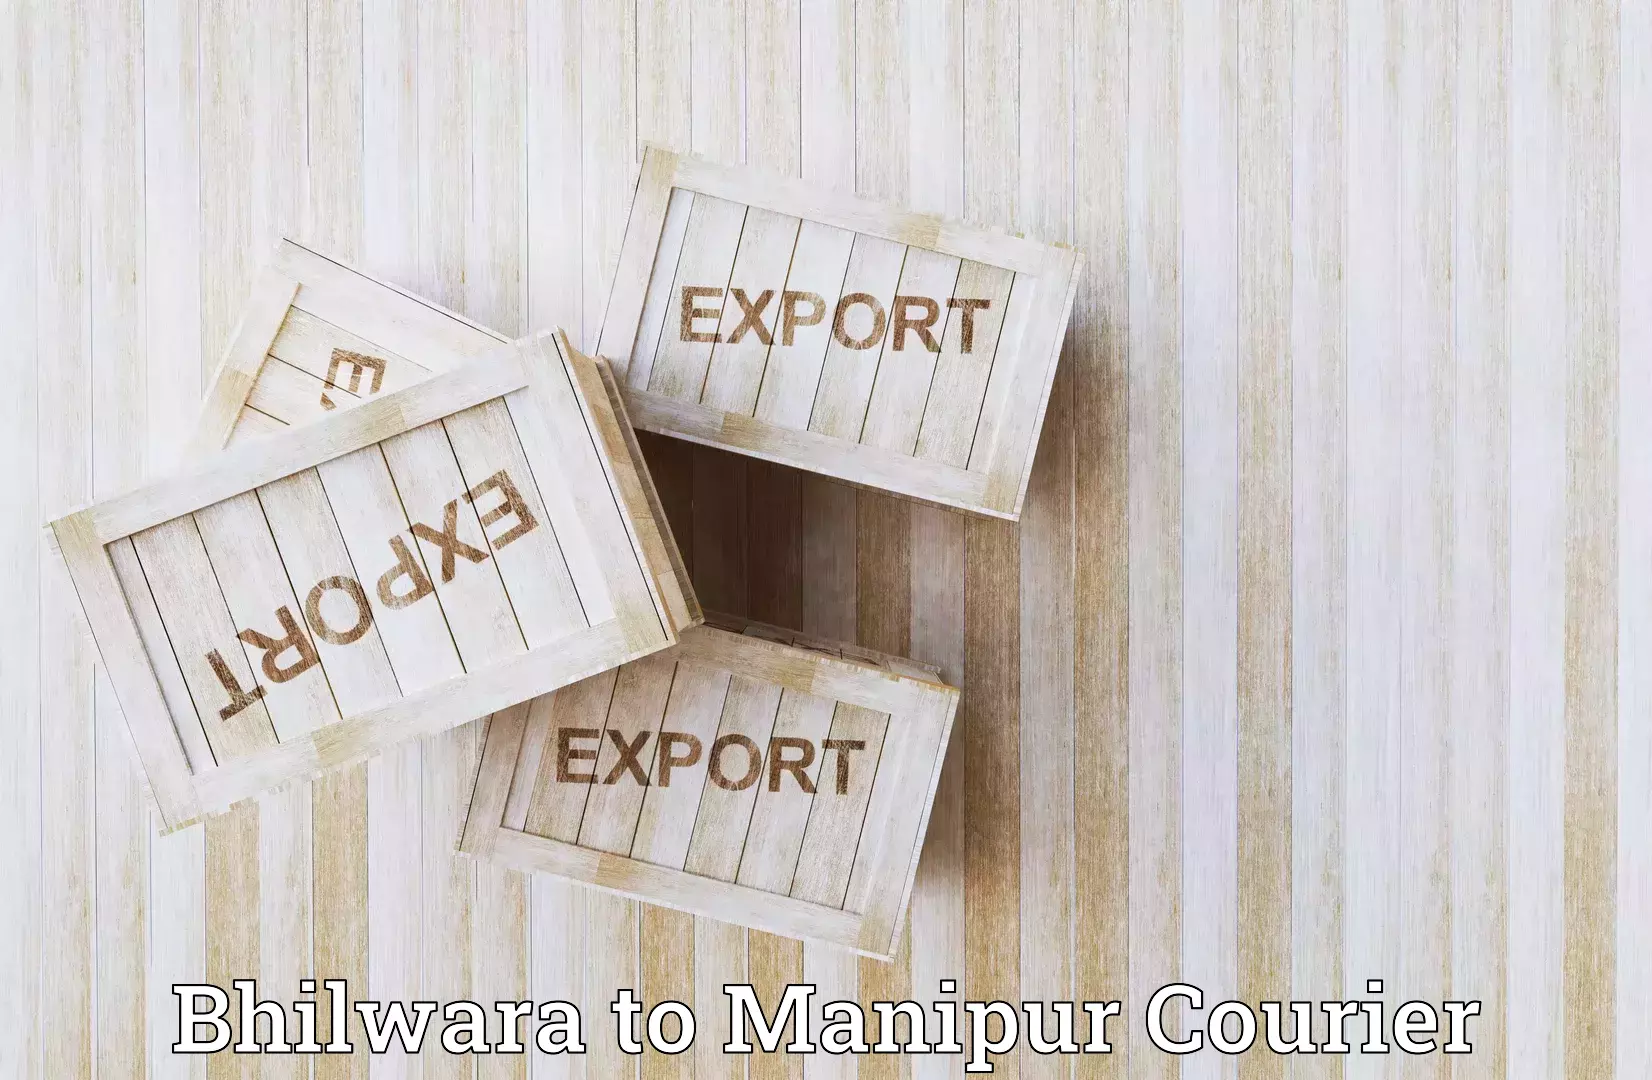 Next-day freight services Bhilwara to Senapati